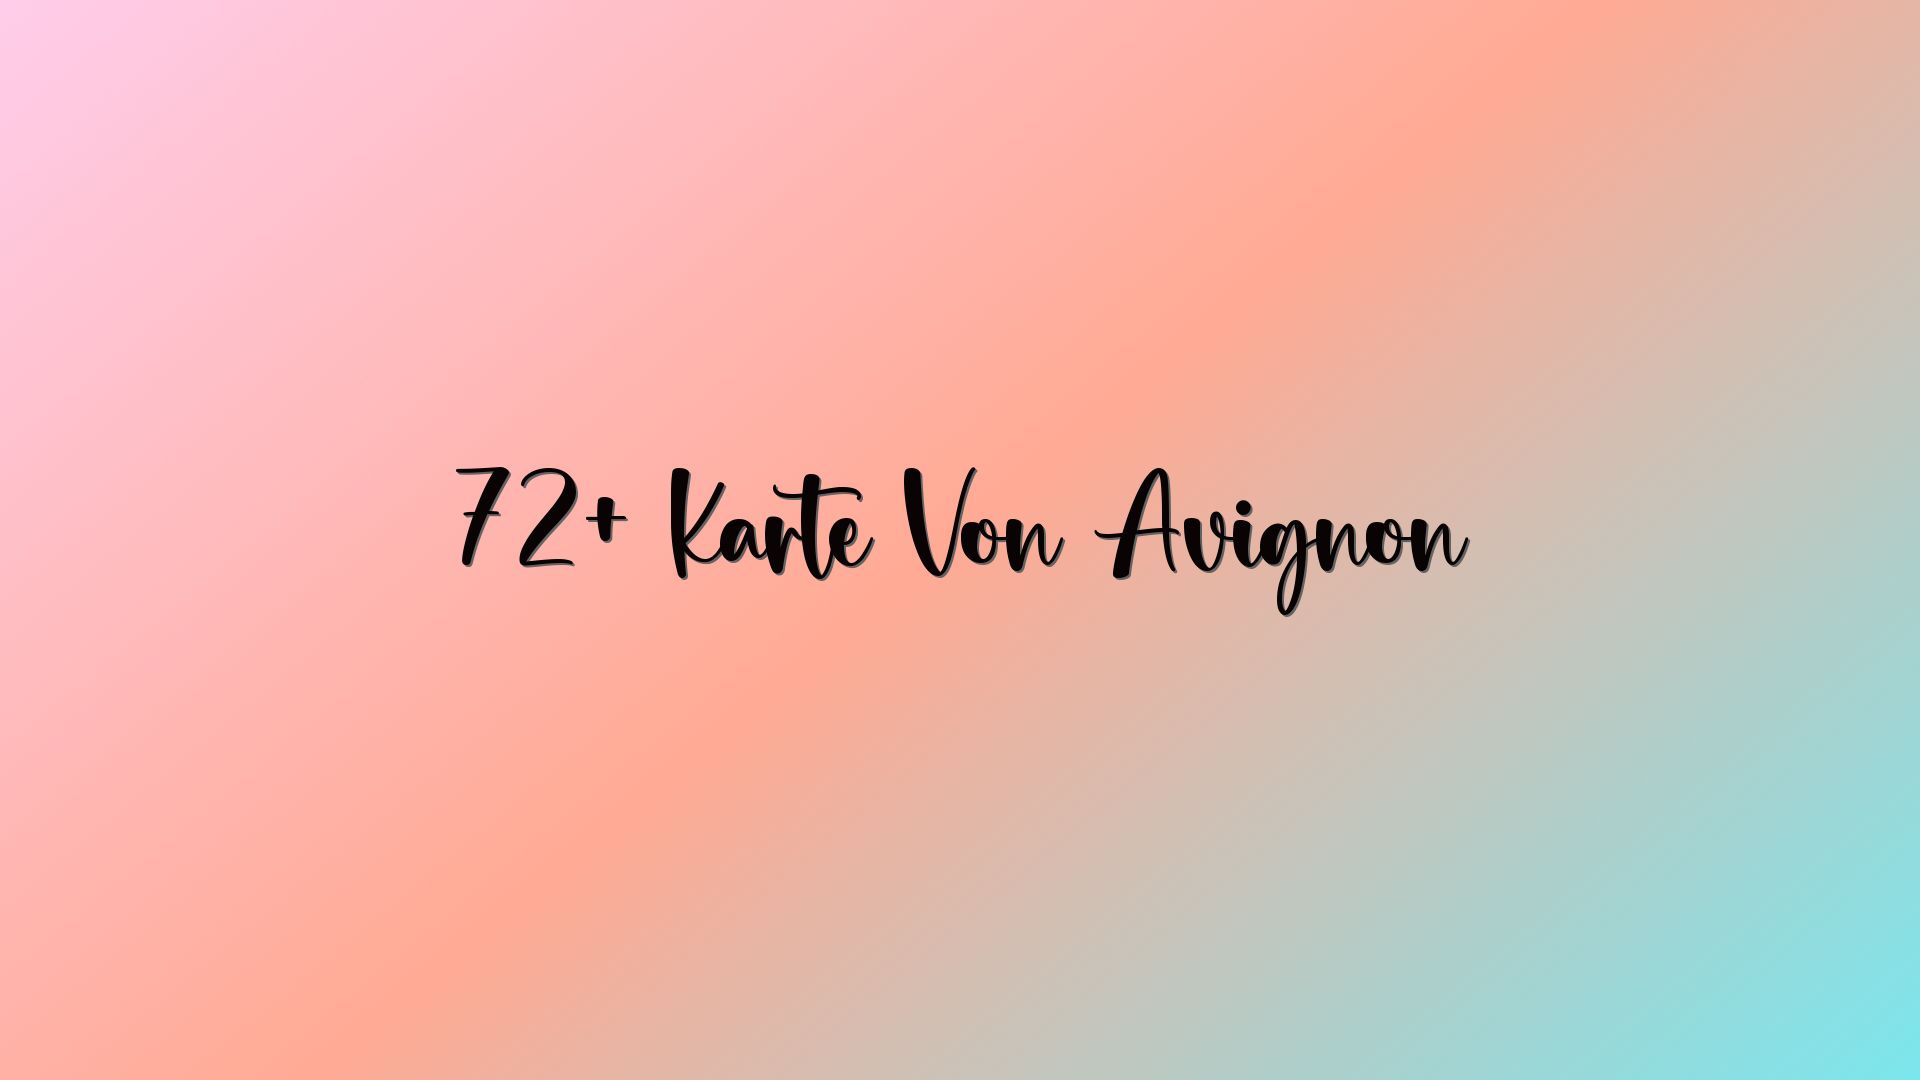 72+ Karte Von Avignon